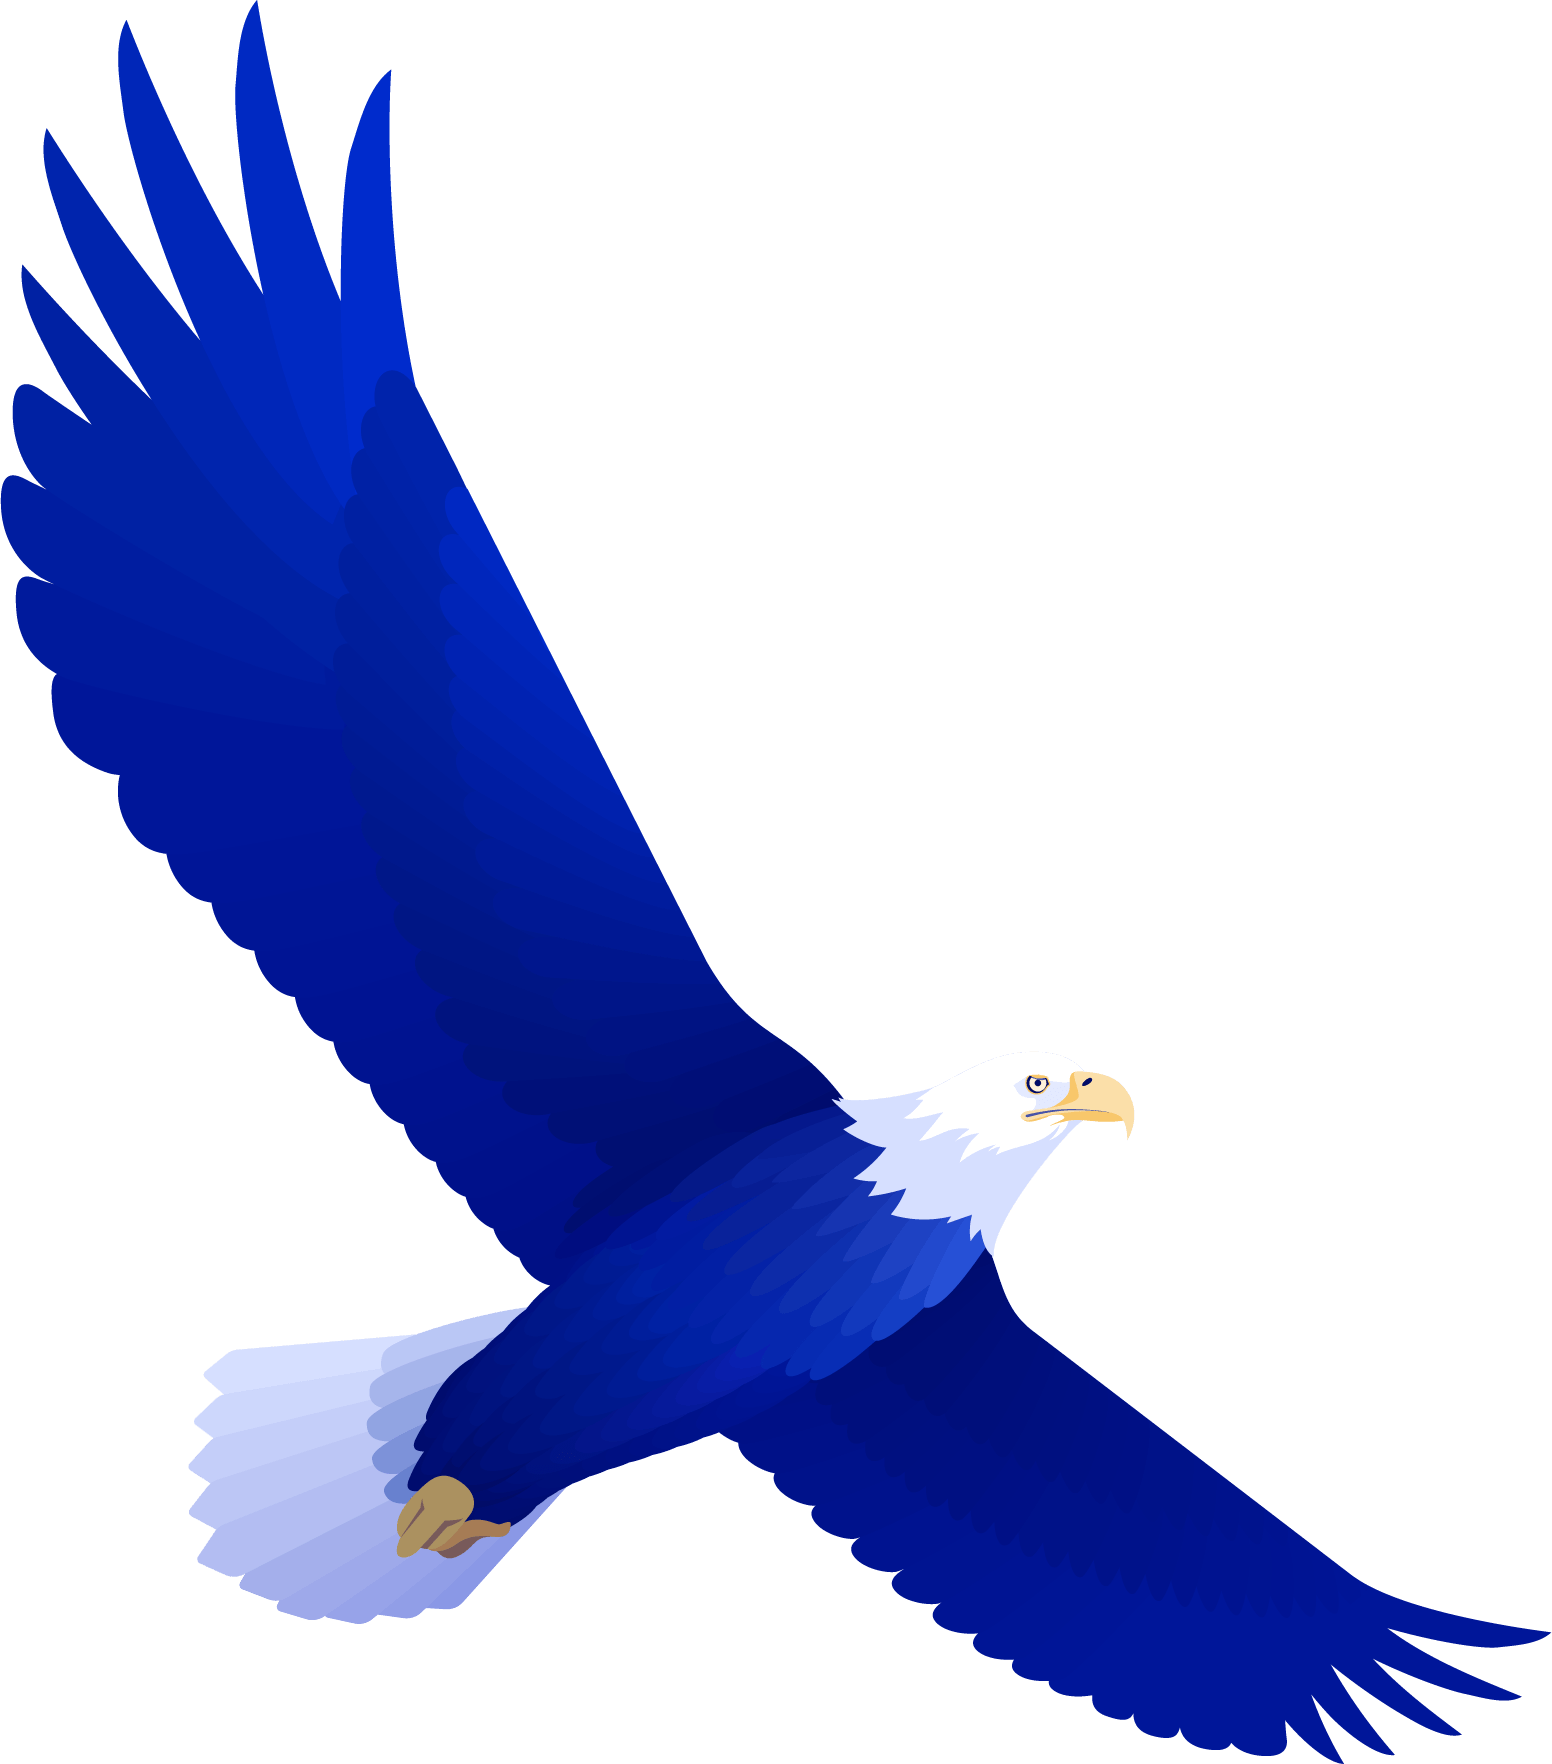 Águila de la marca Visalex